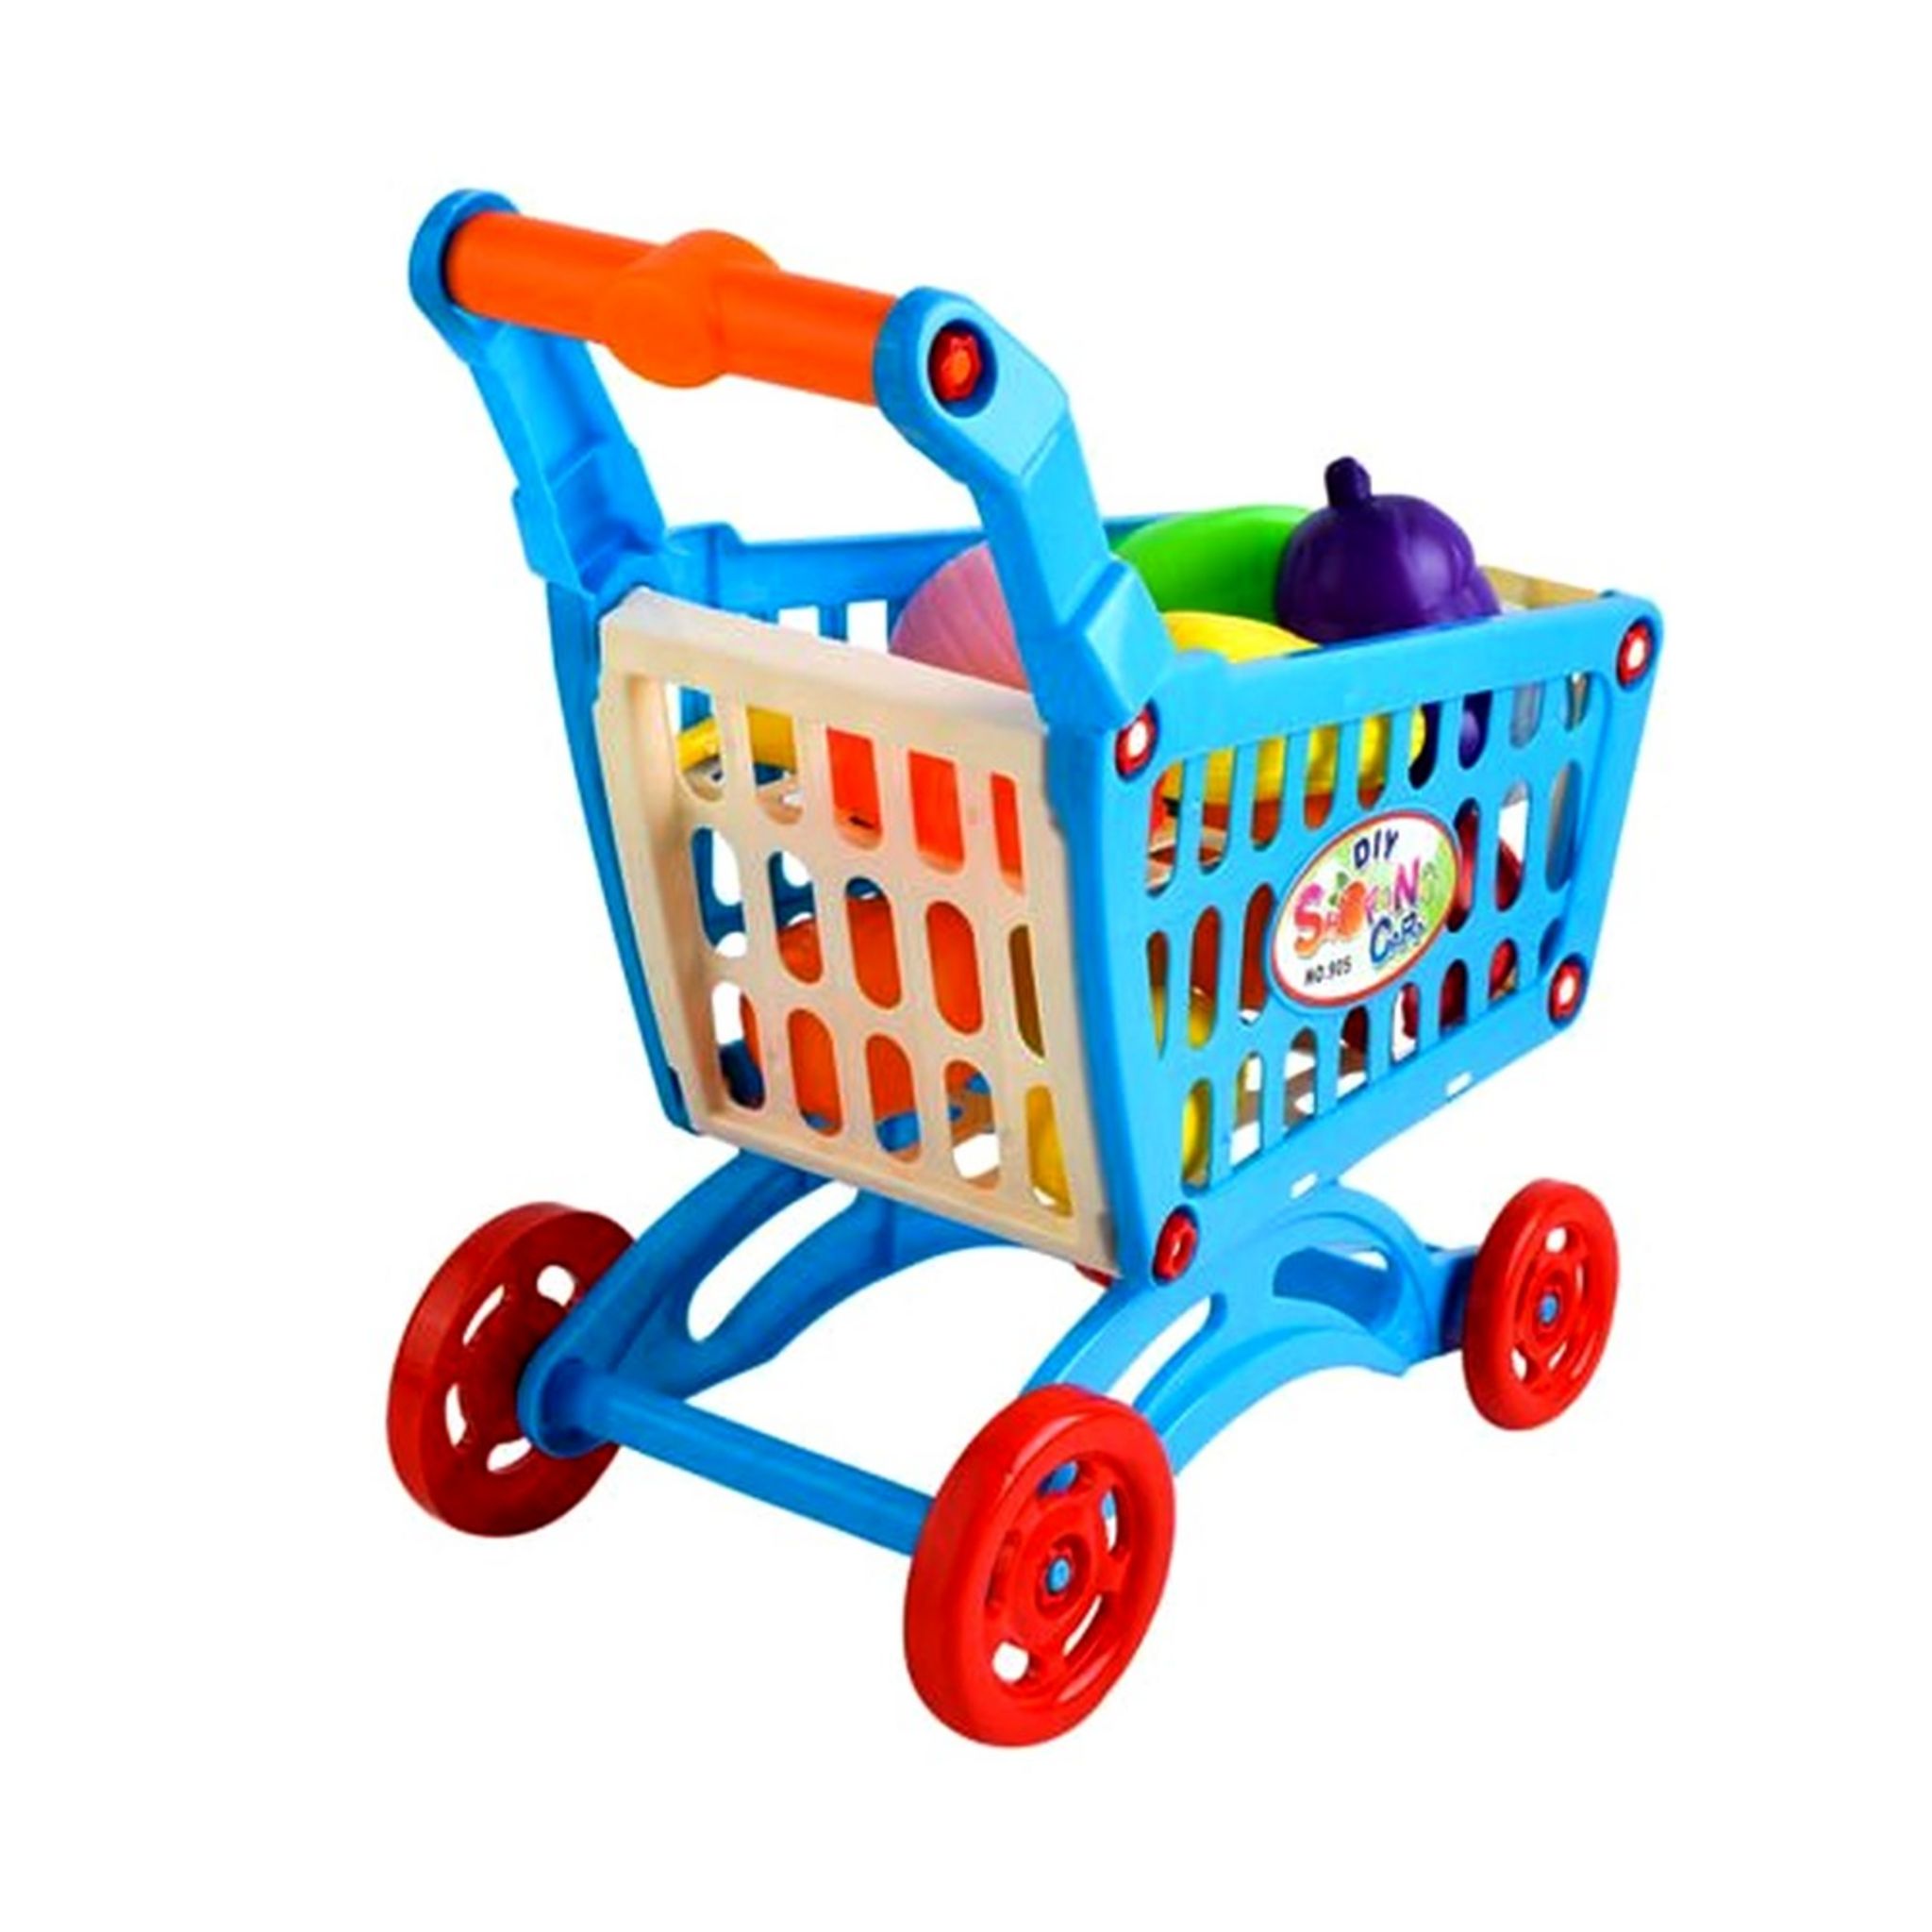 Chariot de course garni fruit legume plastique jouet enfant